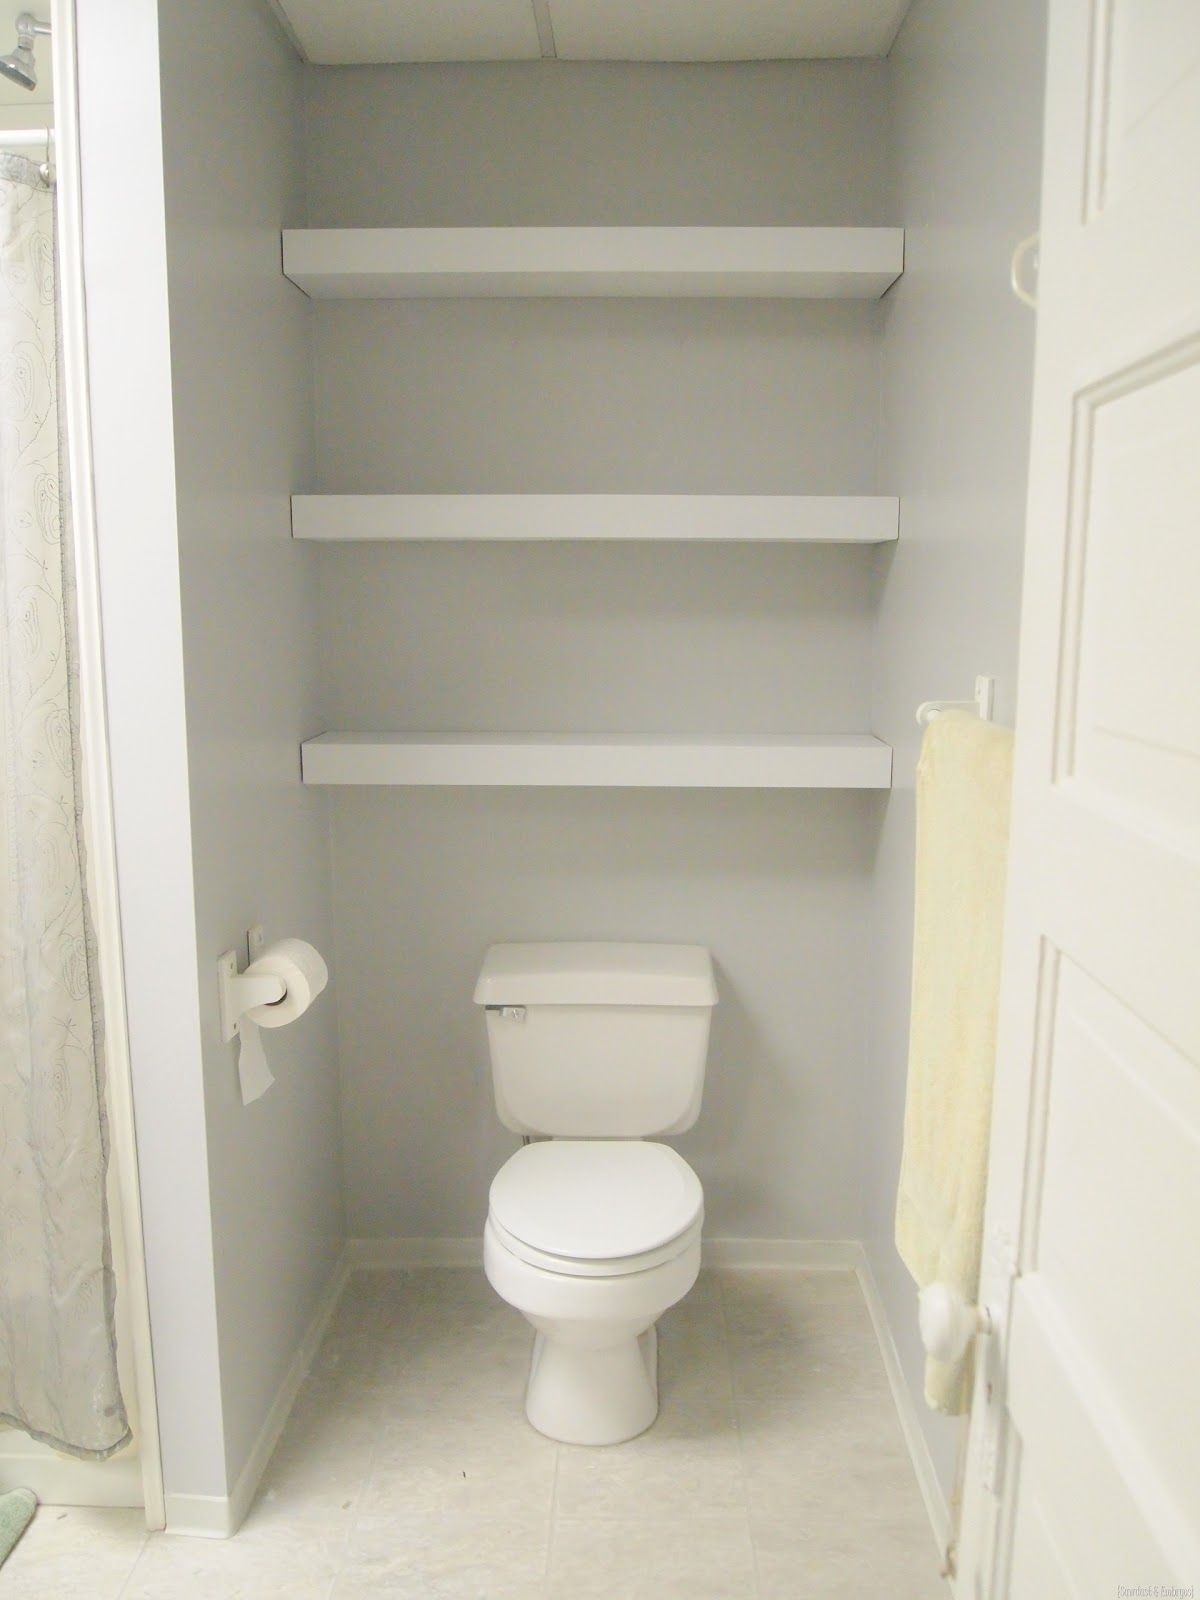 Shelves above toilet 1